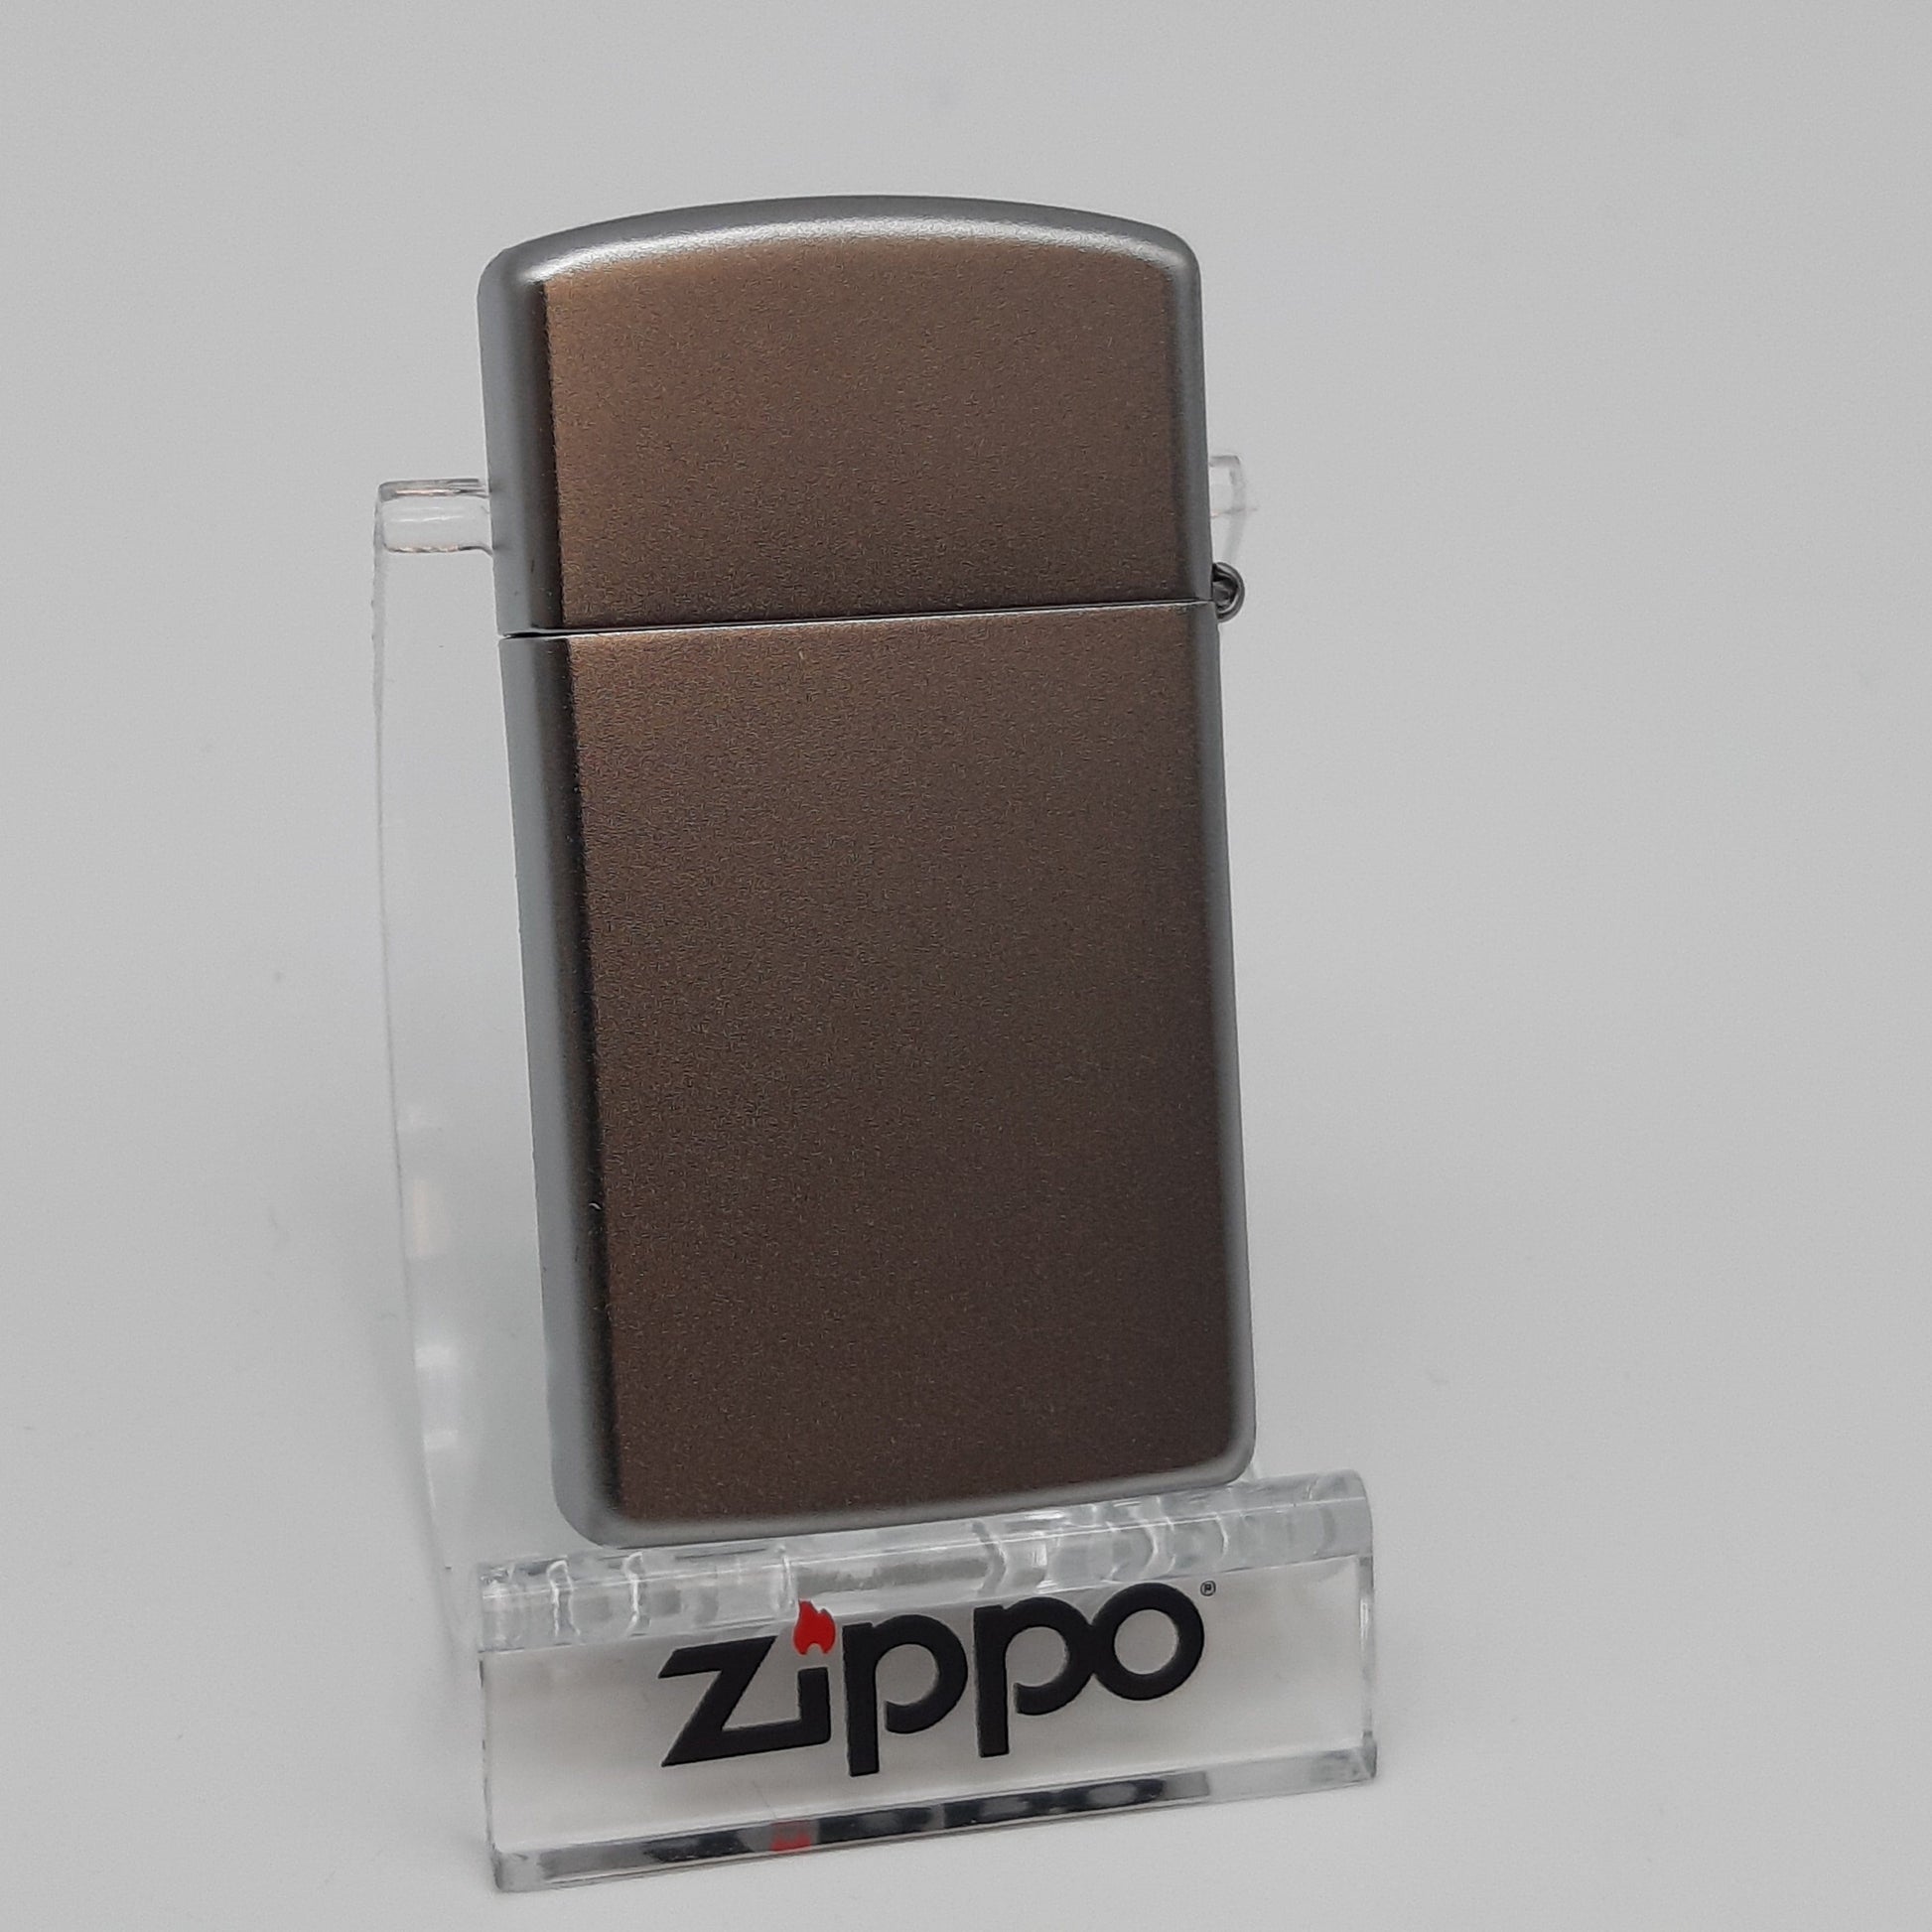 Zippo Zippo Benzinfeuerzeug Love slim